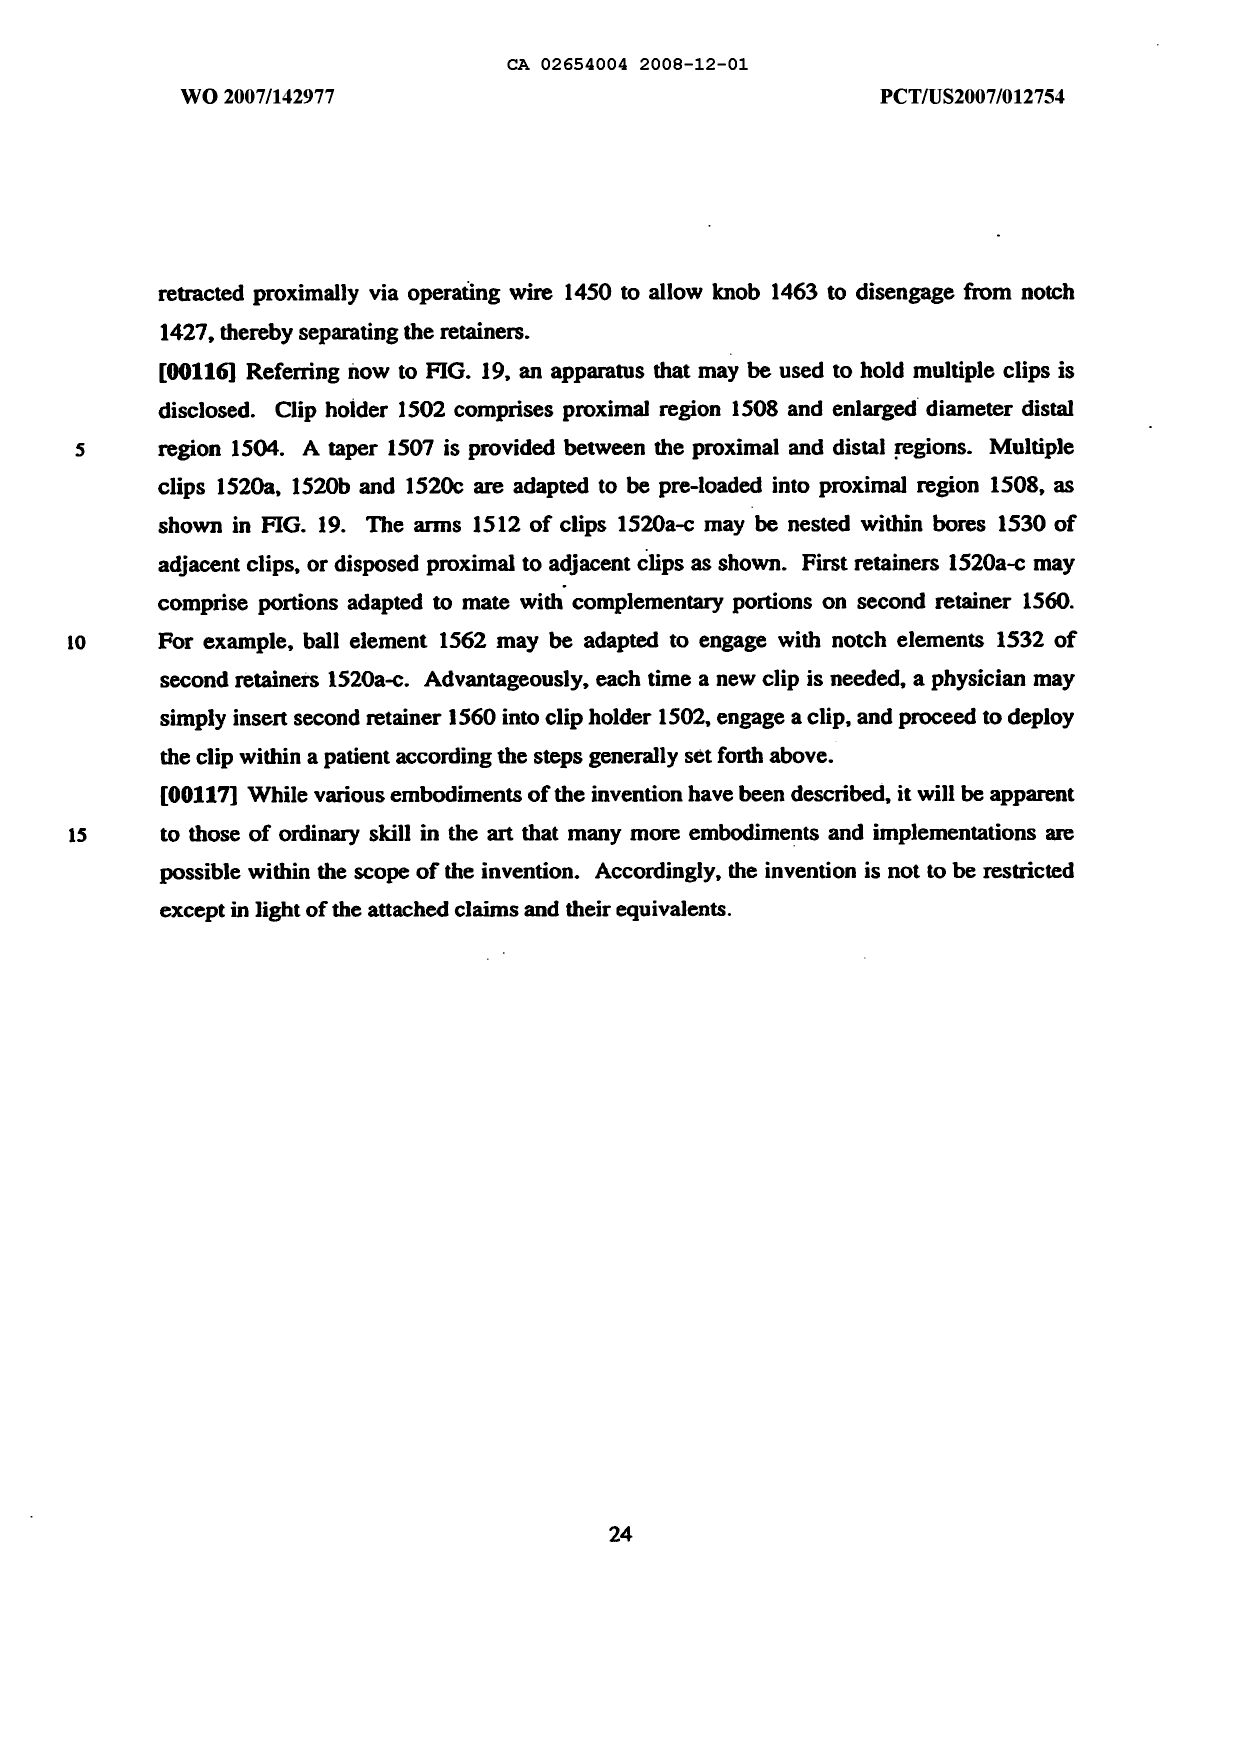 Canadian Patent Document 2654004. Description 20071201. Image 24 of 24